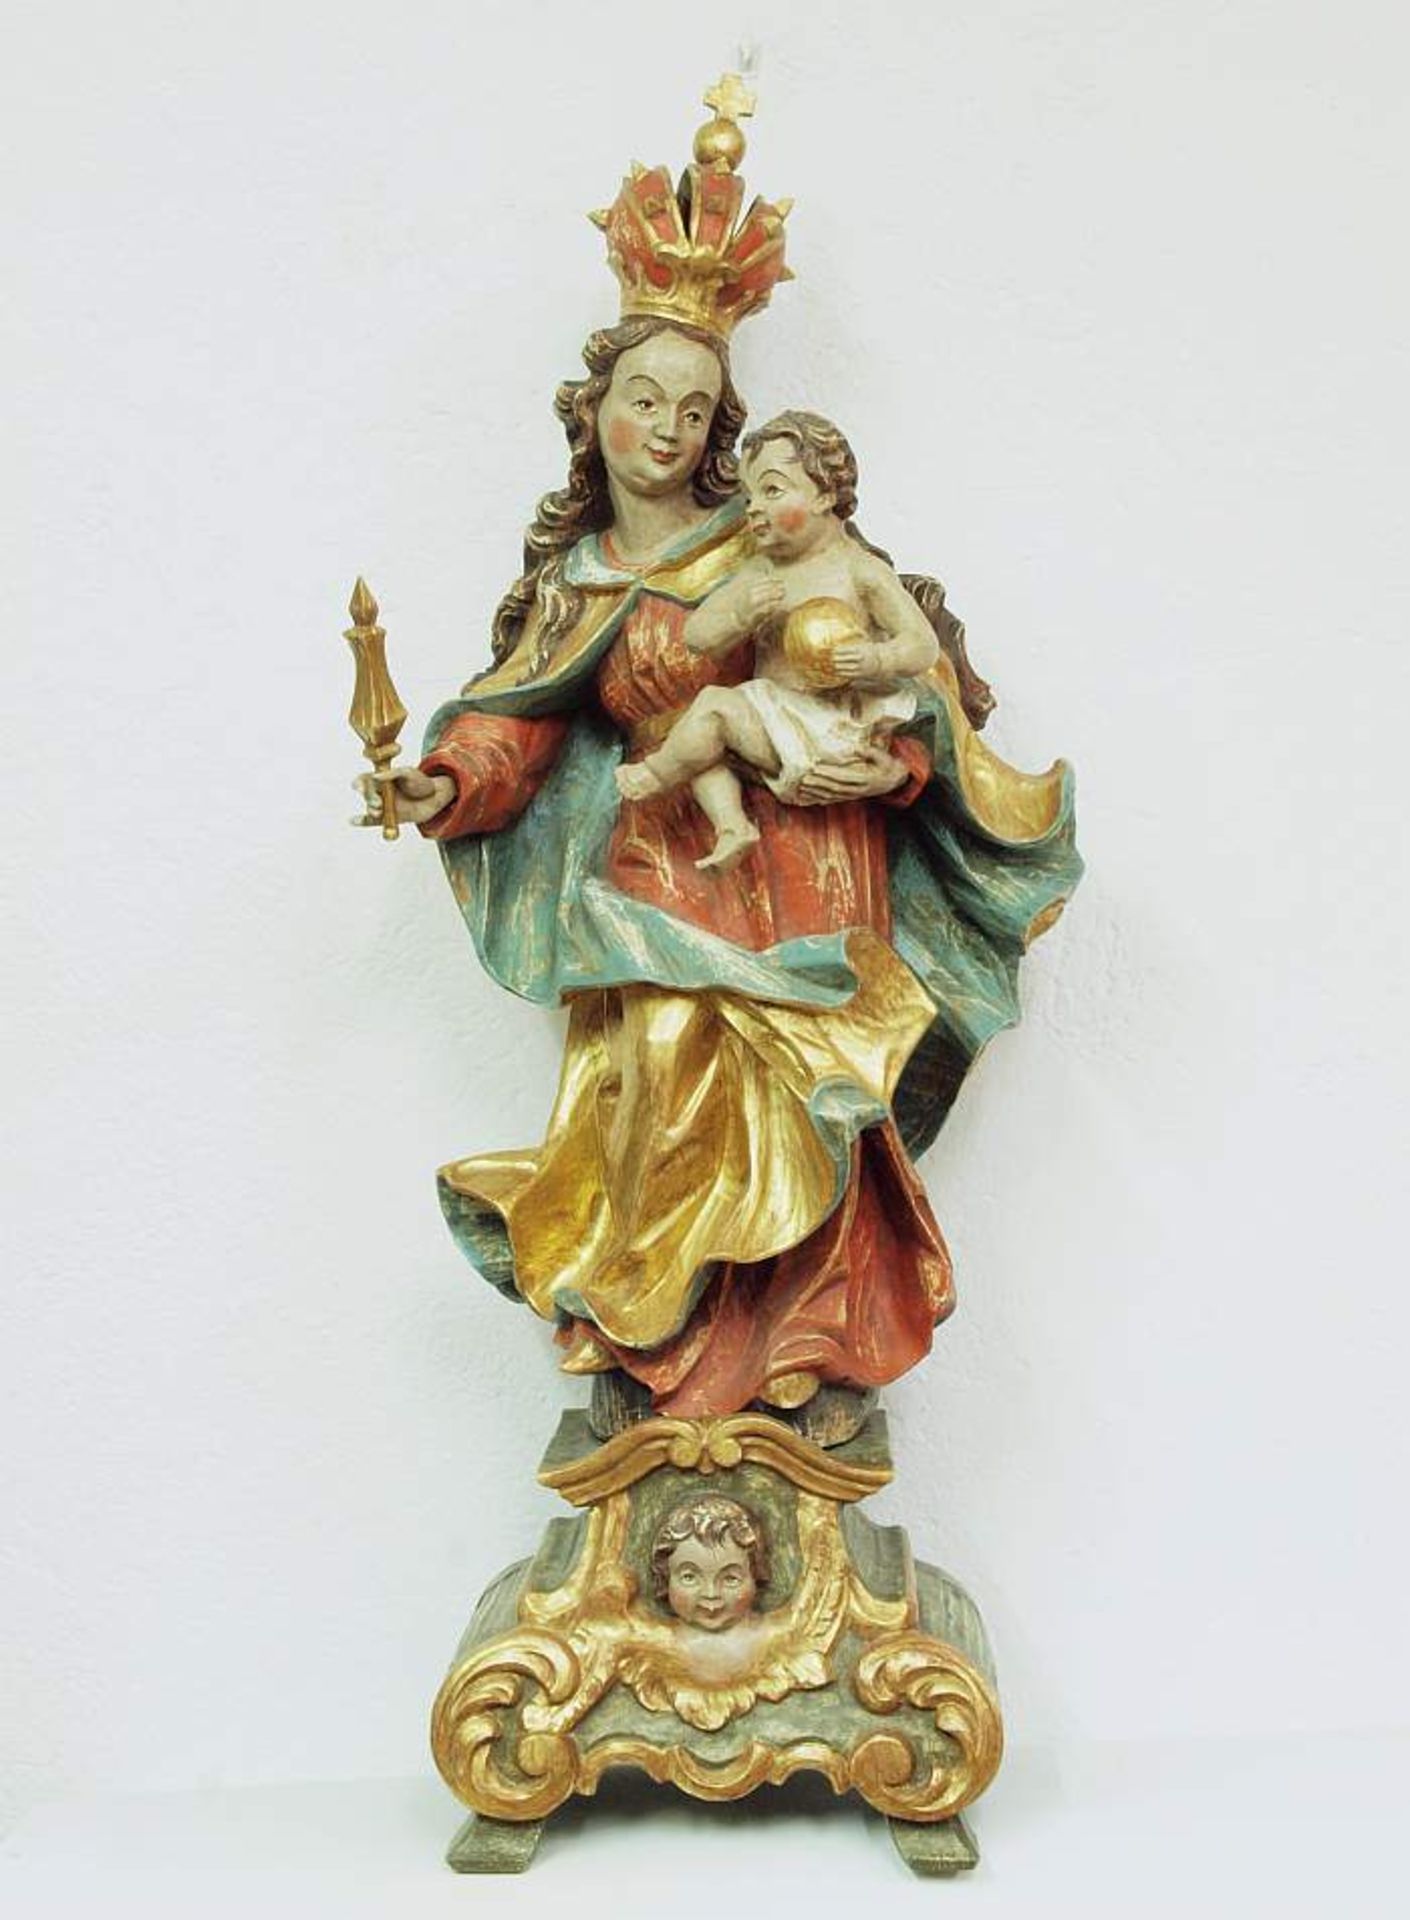 Madonna mit Kind. Madonna mit Kind. 19. Jahrhundert. Innsbrucker Madonna, der Stil der